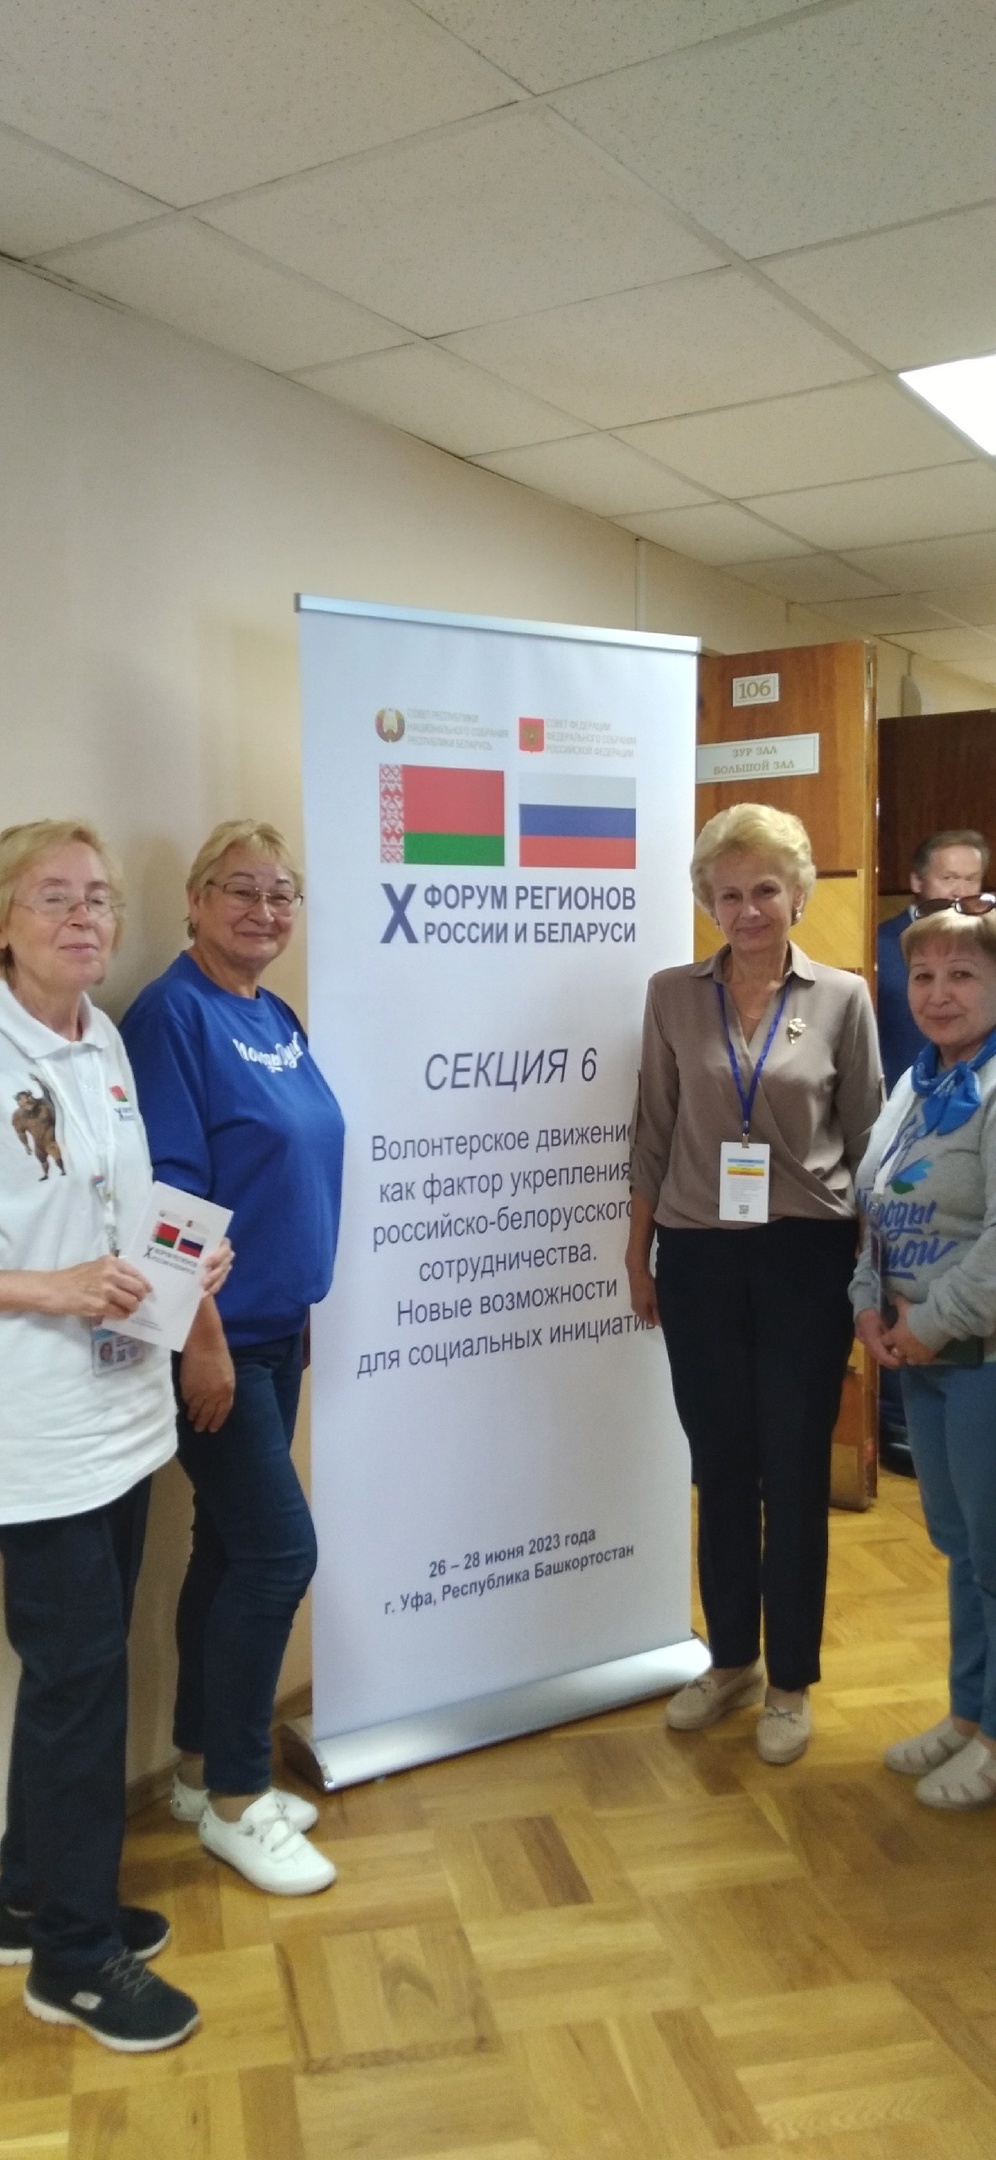 X - й форум регионов России и Беларуси